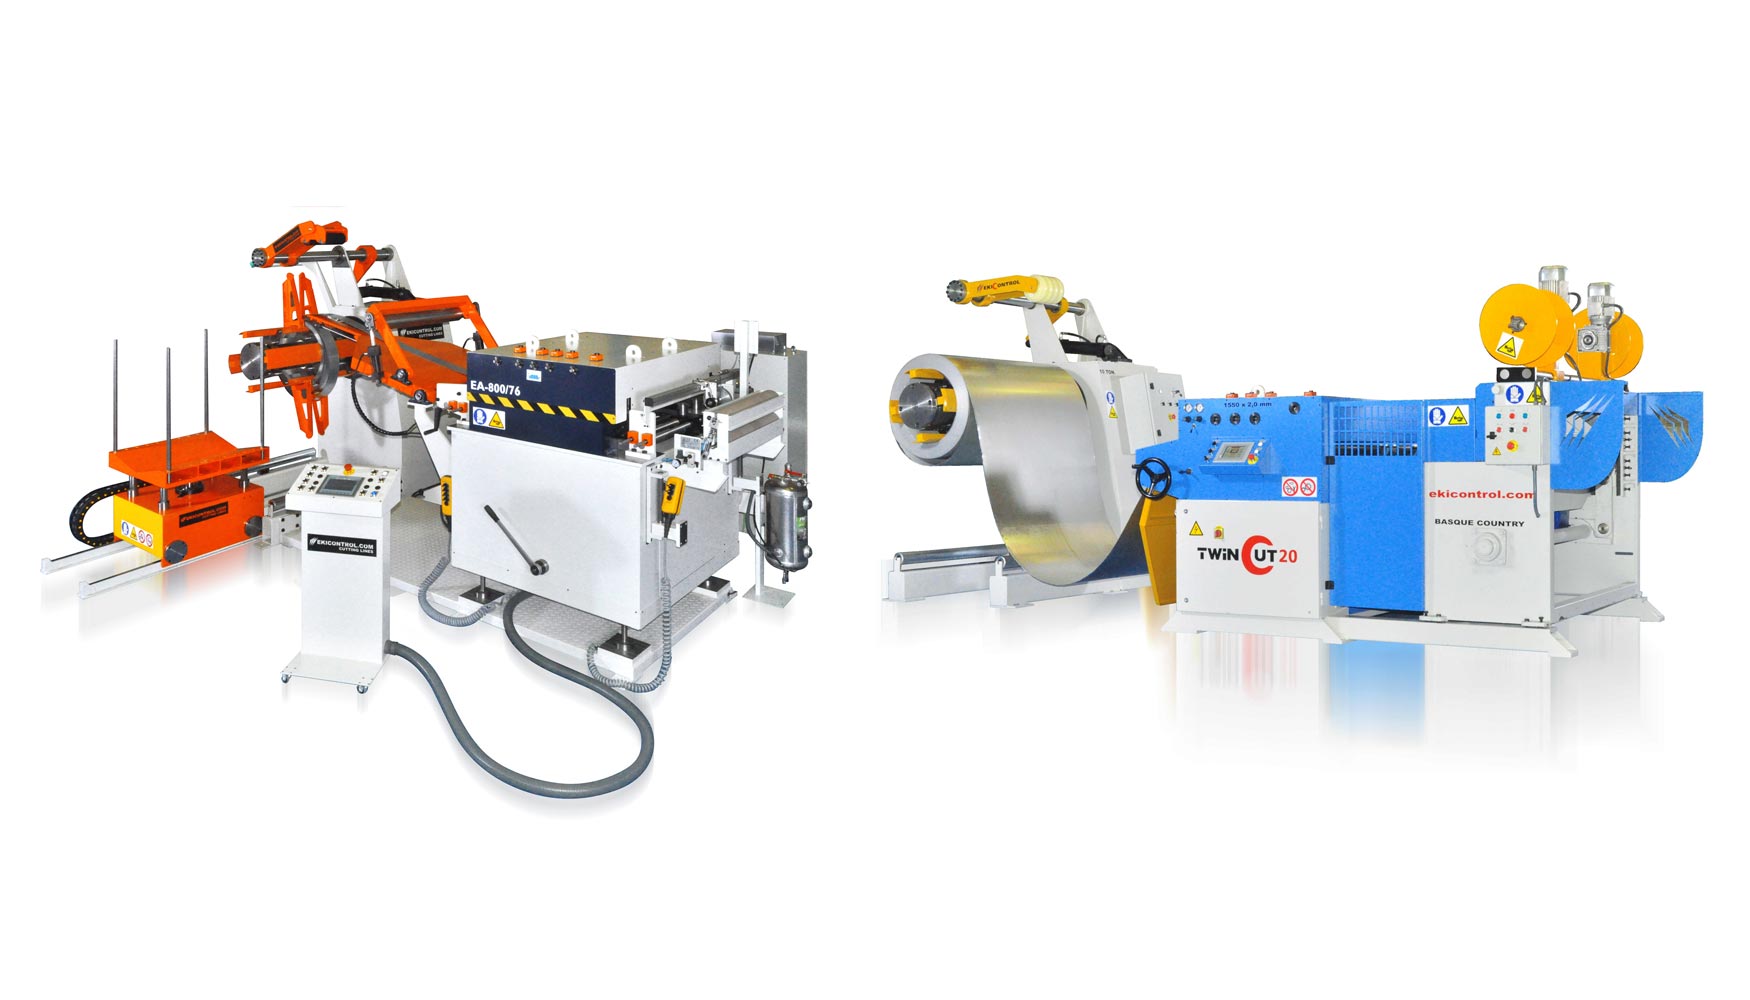 Ekicontrol muestra en EuroBLECH la nueva gama de mquinas para alimentacin a prensa y la lnea de corte longitudinal y transversal...